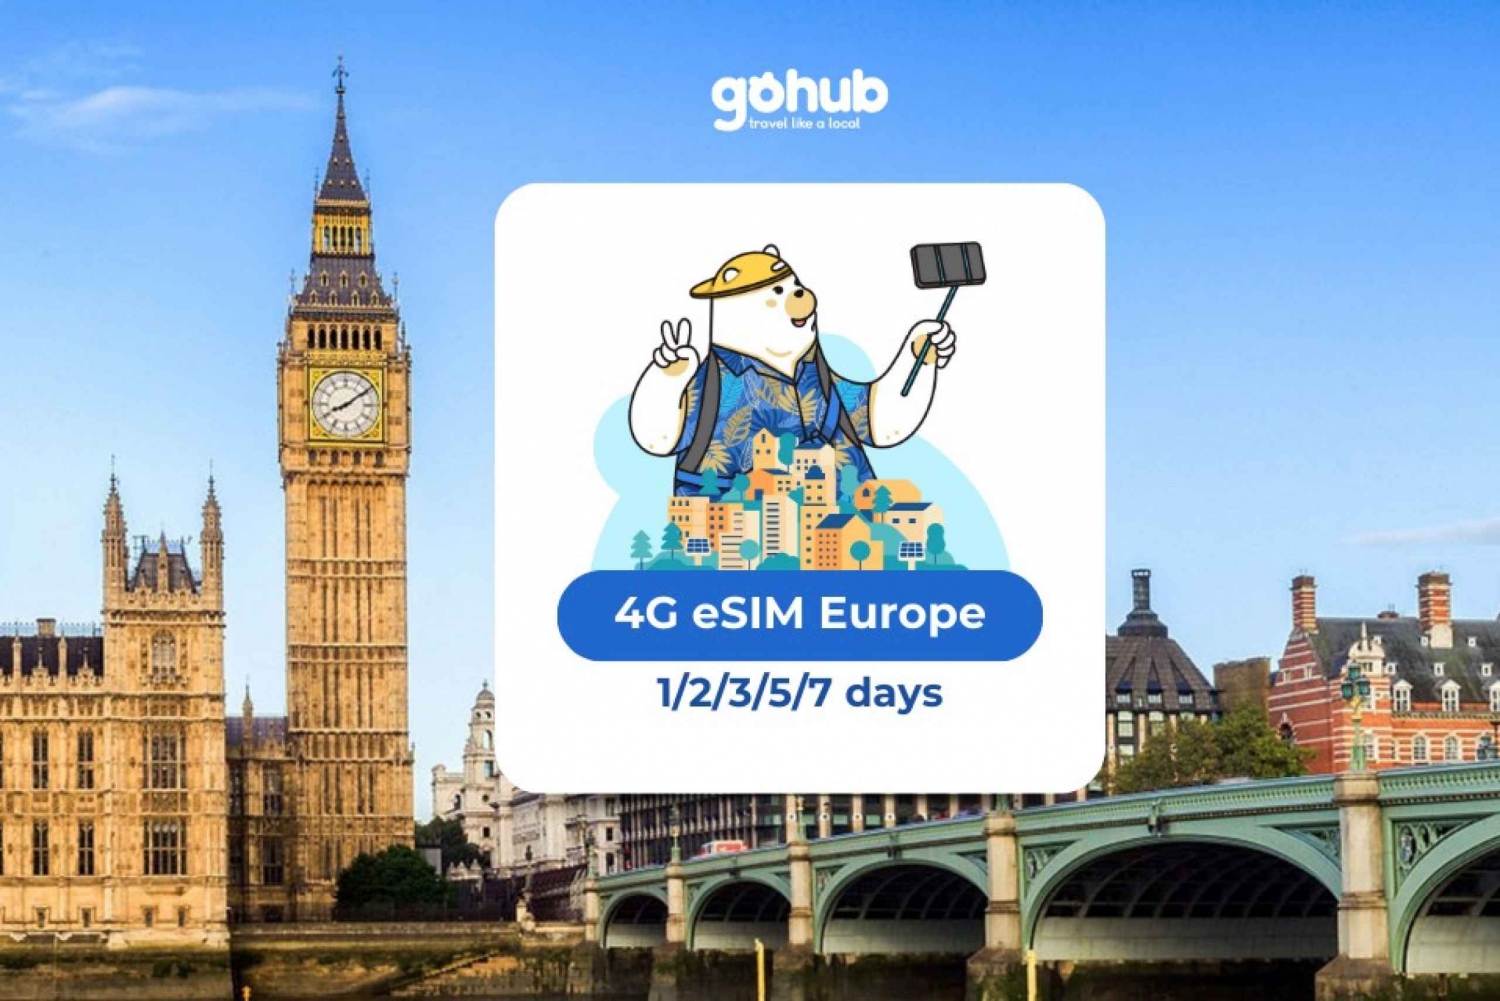 Europa: eSIM Datos móviles (33 países) - 1/2/3/5/7 días